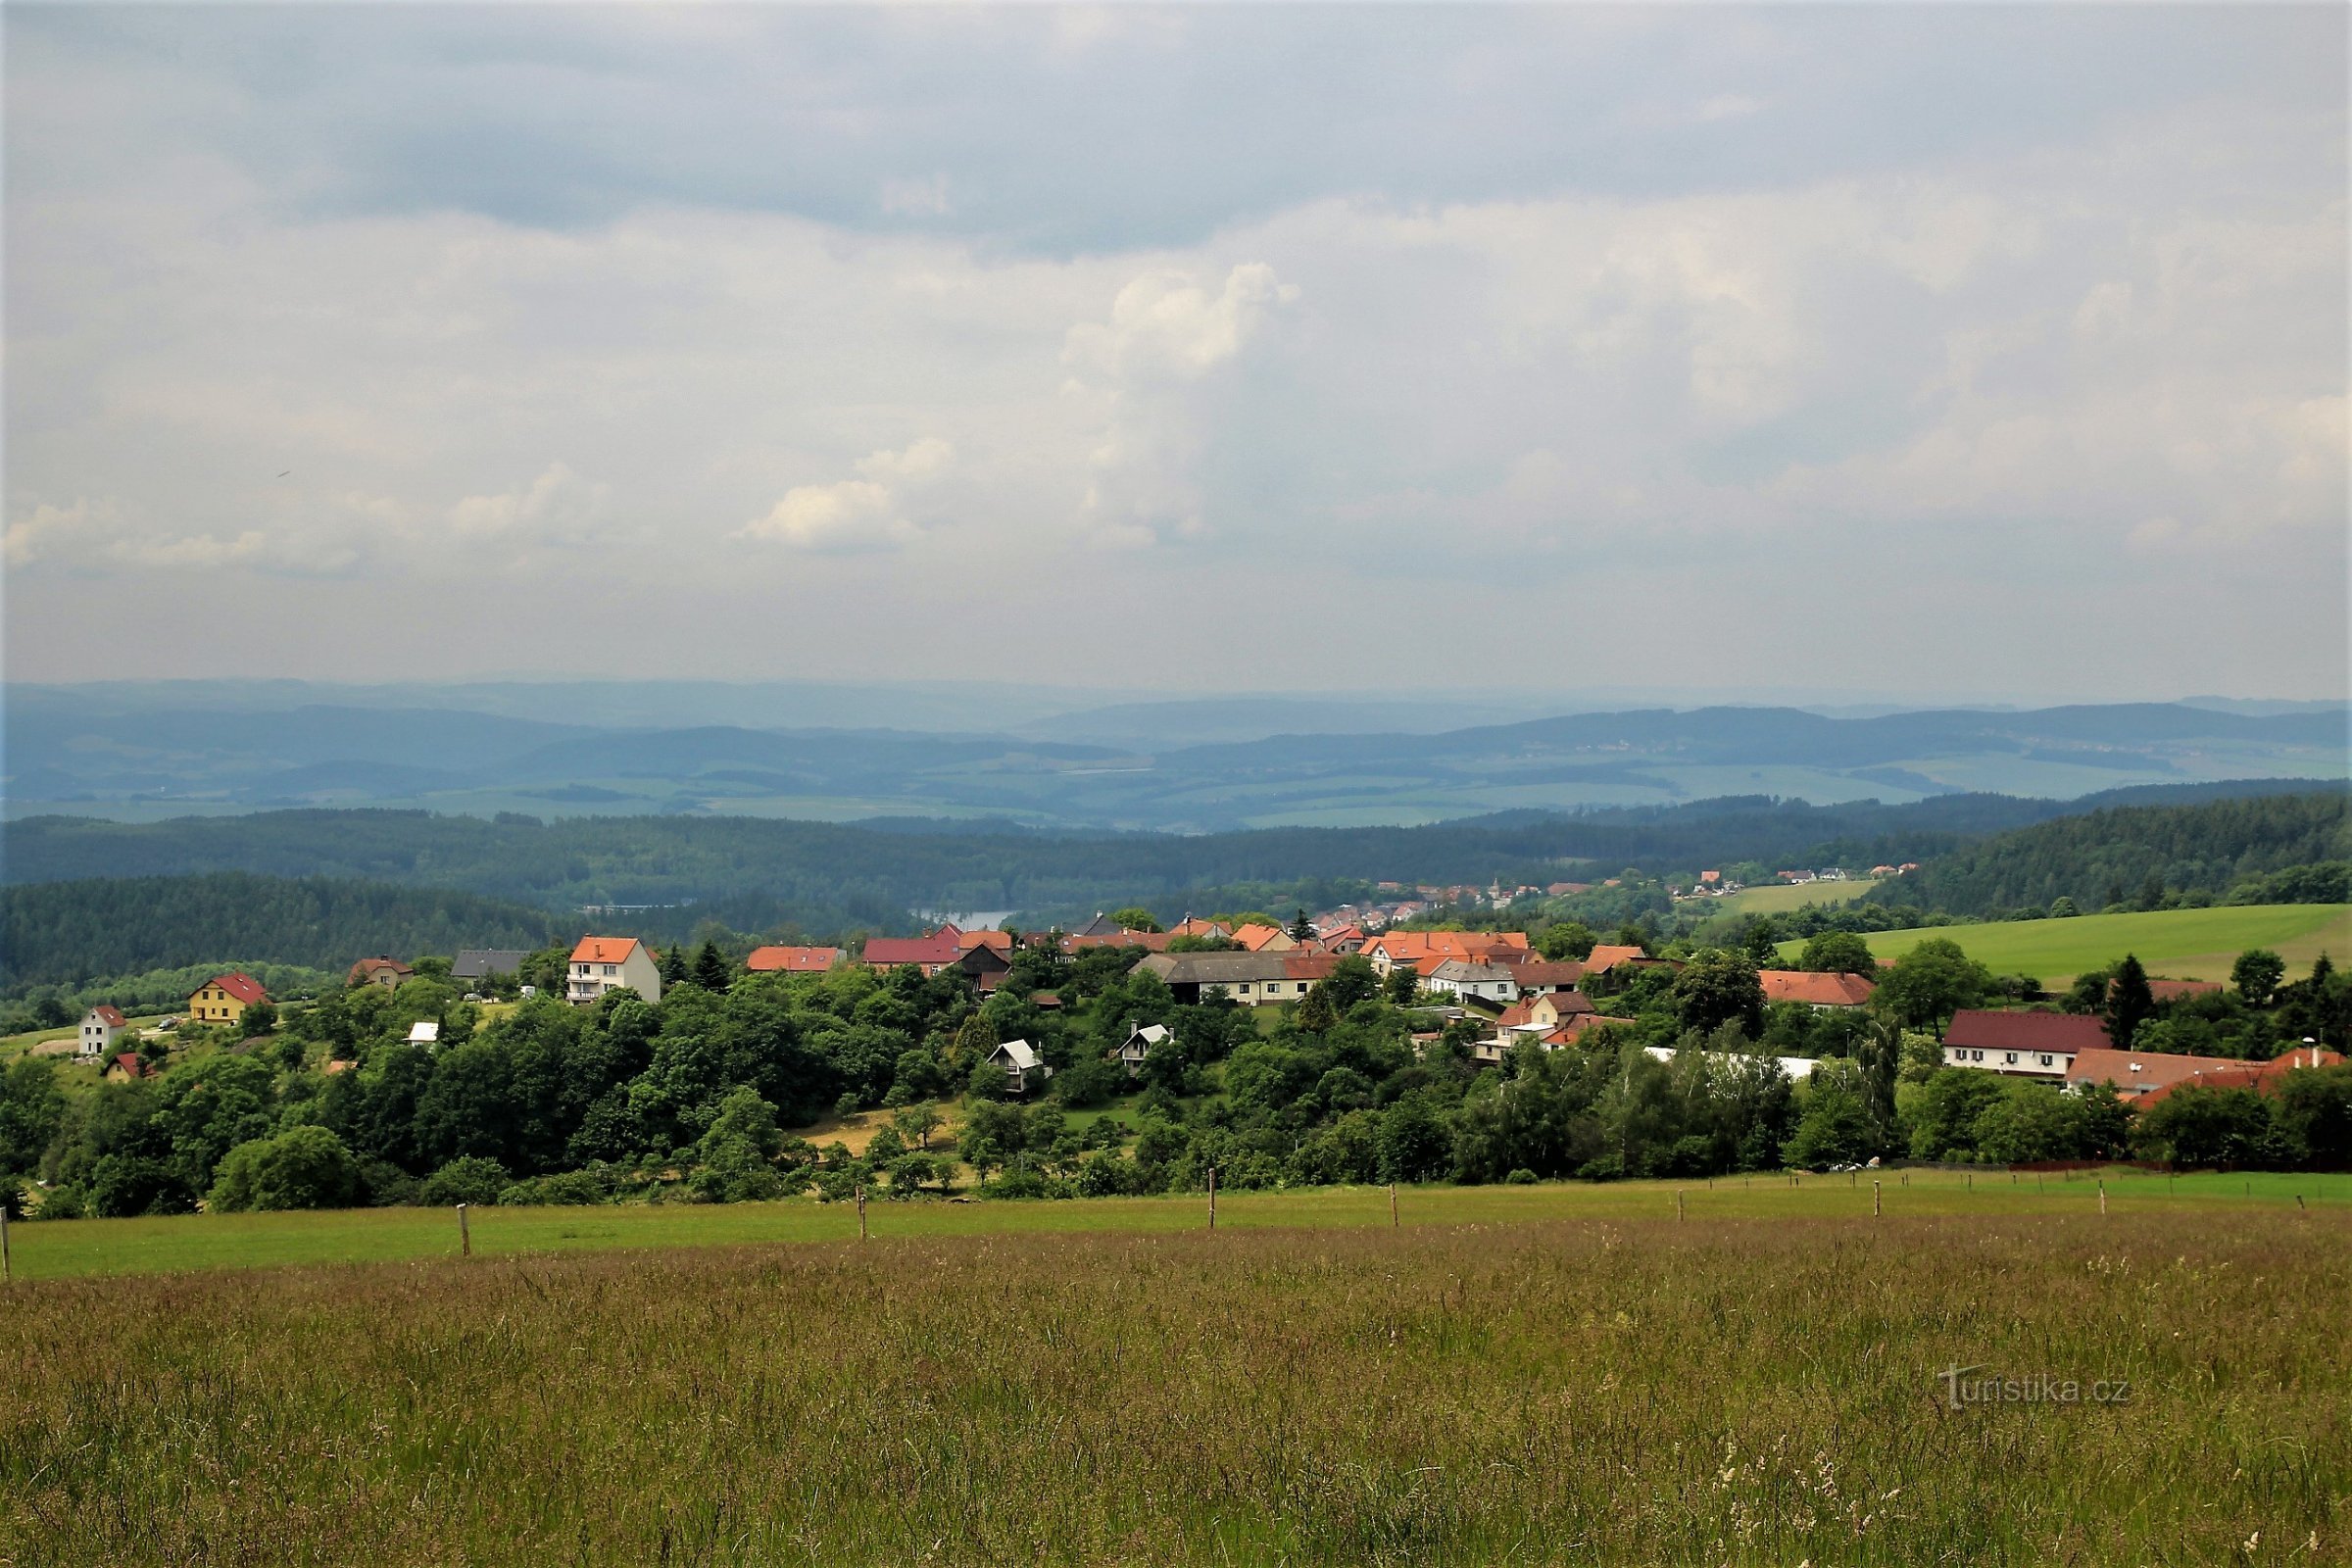 Onder het uitkijkpunt ligt het pittoreske dorpje Velenov. Daaronder is een breed bassin naar Bosko